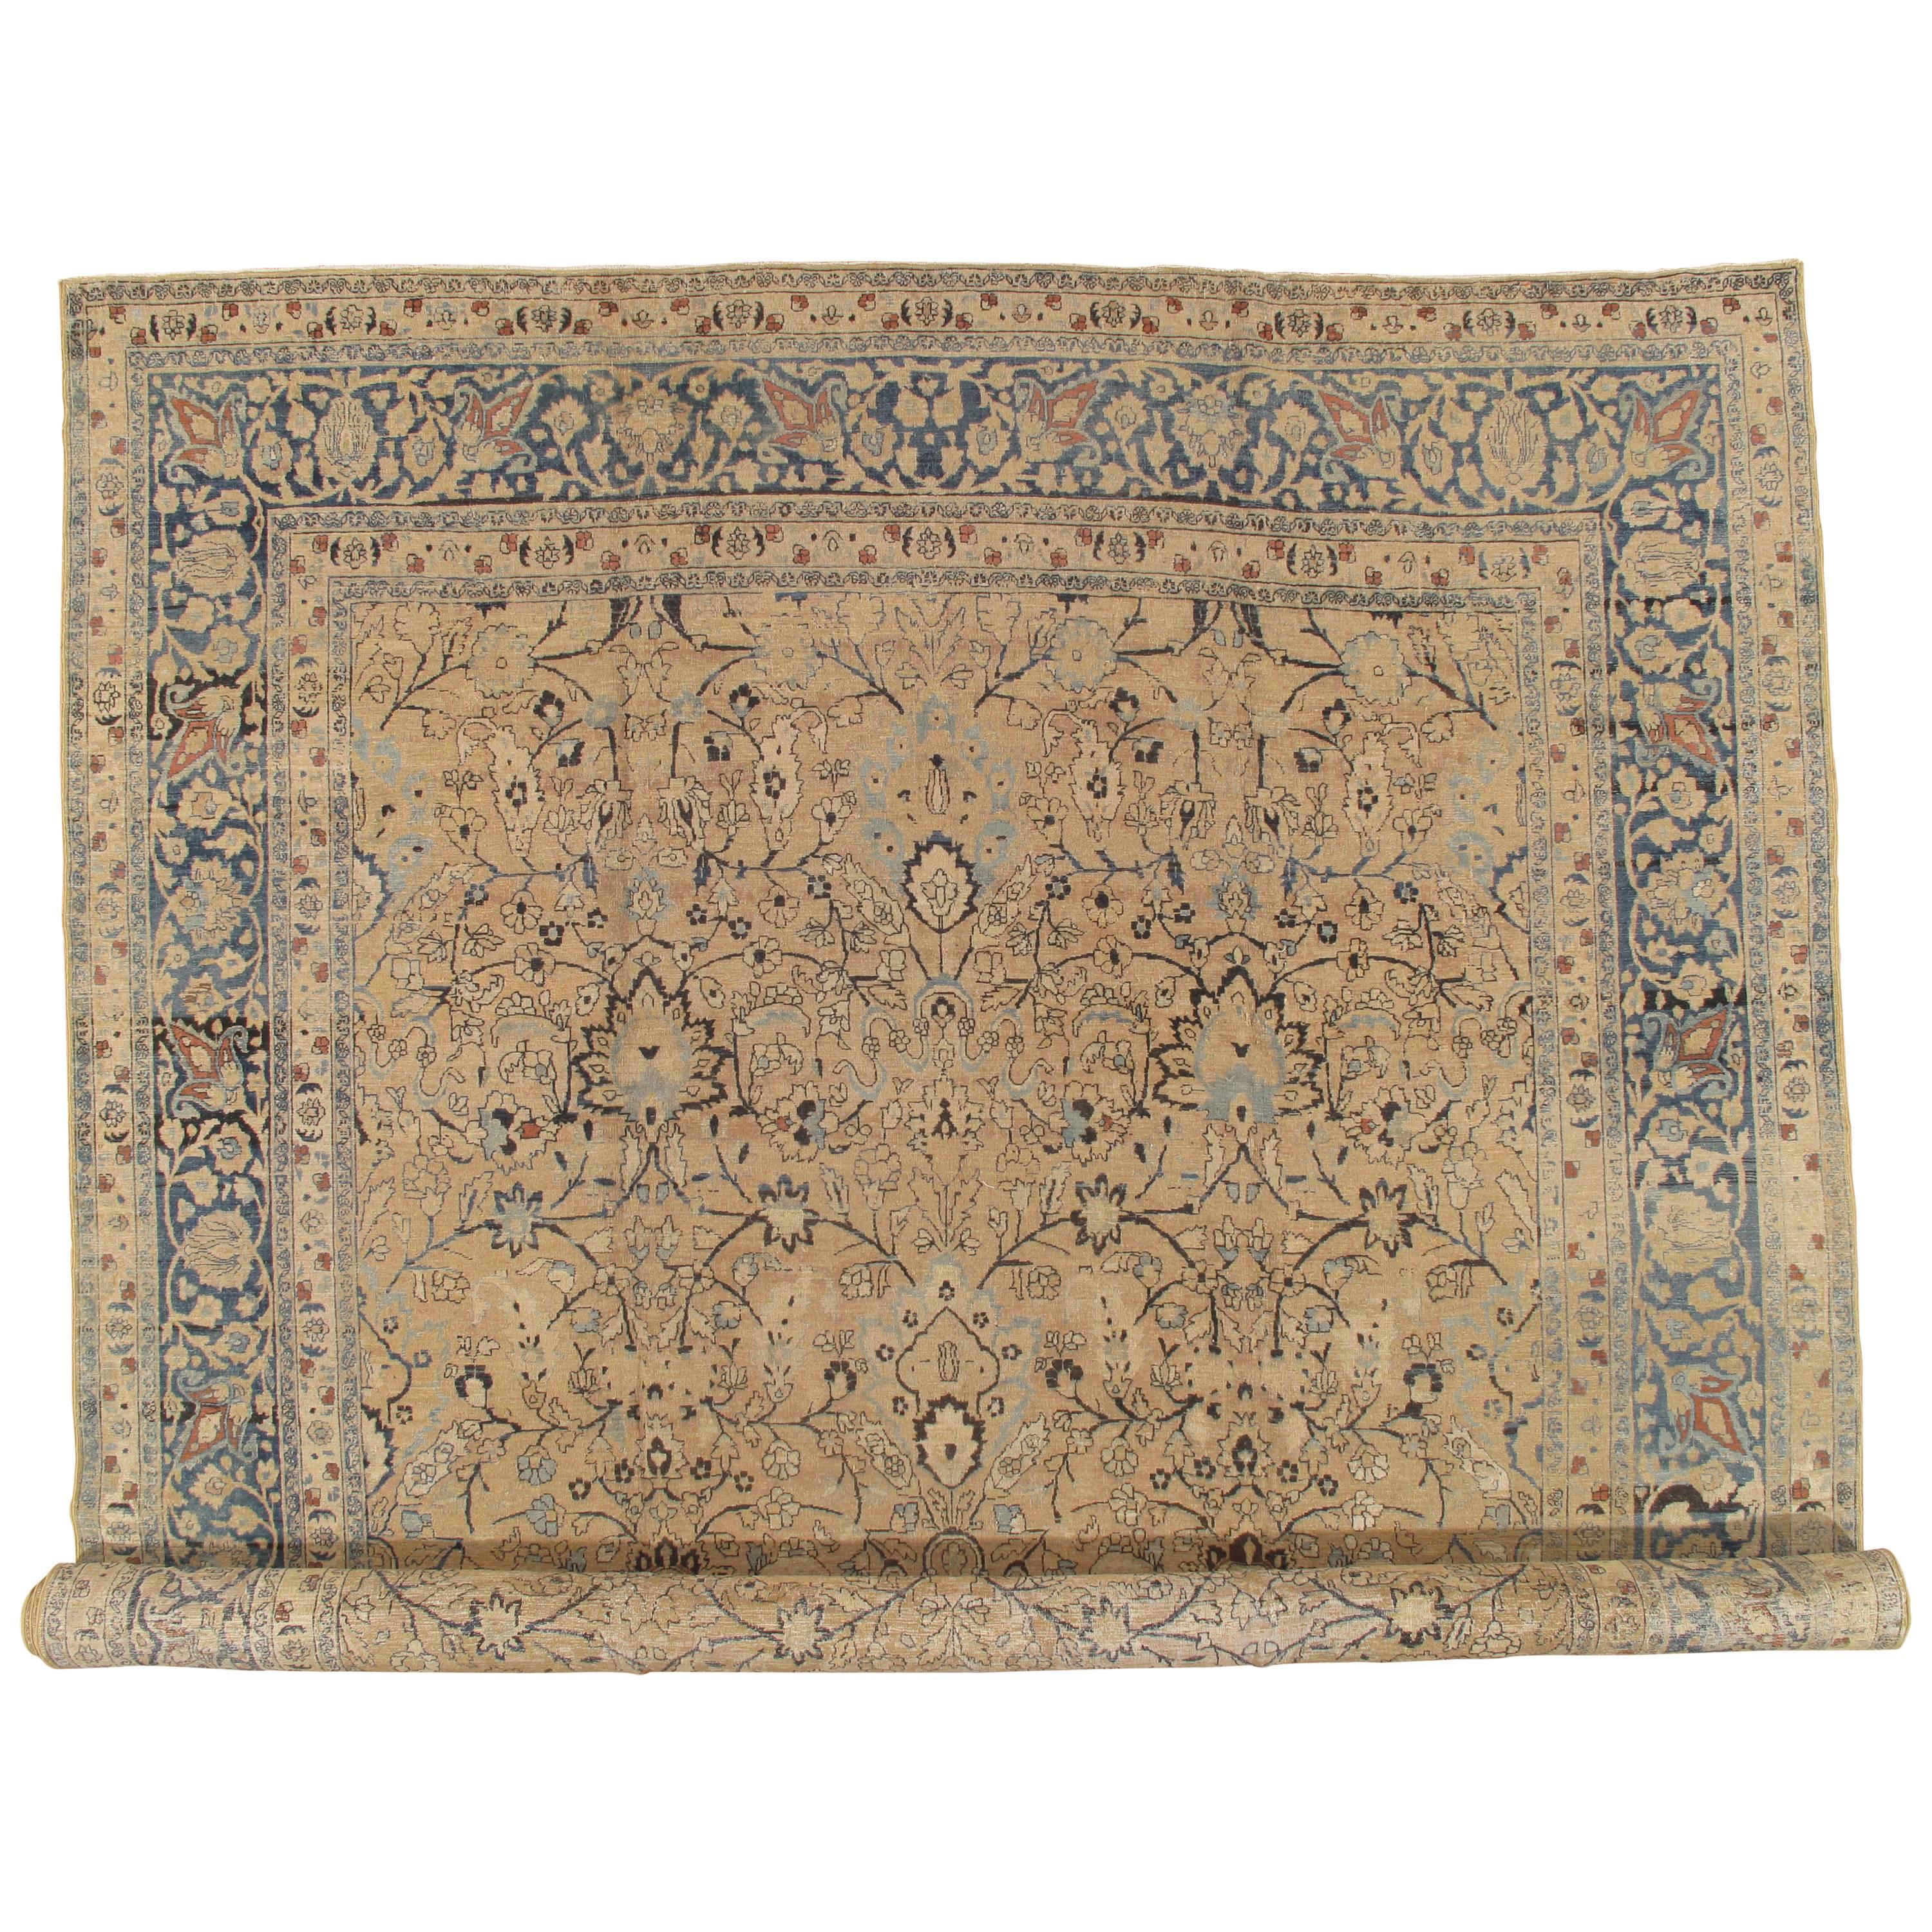 Tapis persan ancien de Tabriz, tapis fait à la main en bleu, taupe et caramel doux